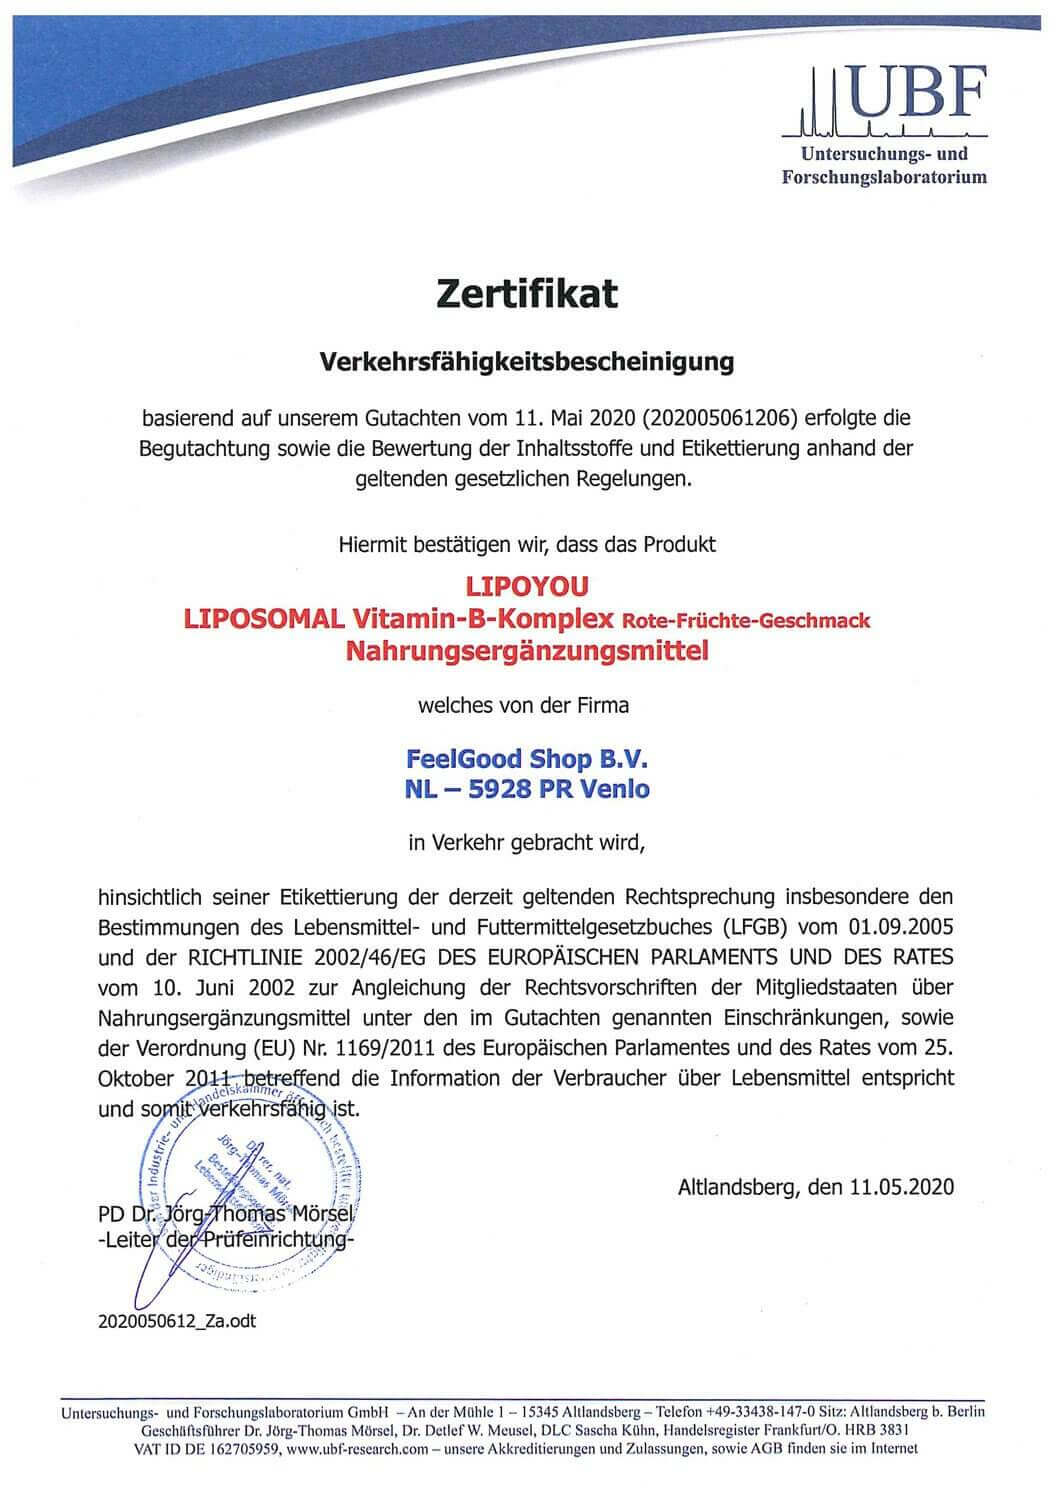 LIPOSOMAL Vitamin-B-Komplex Zertifikat